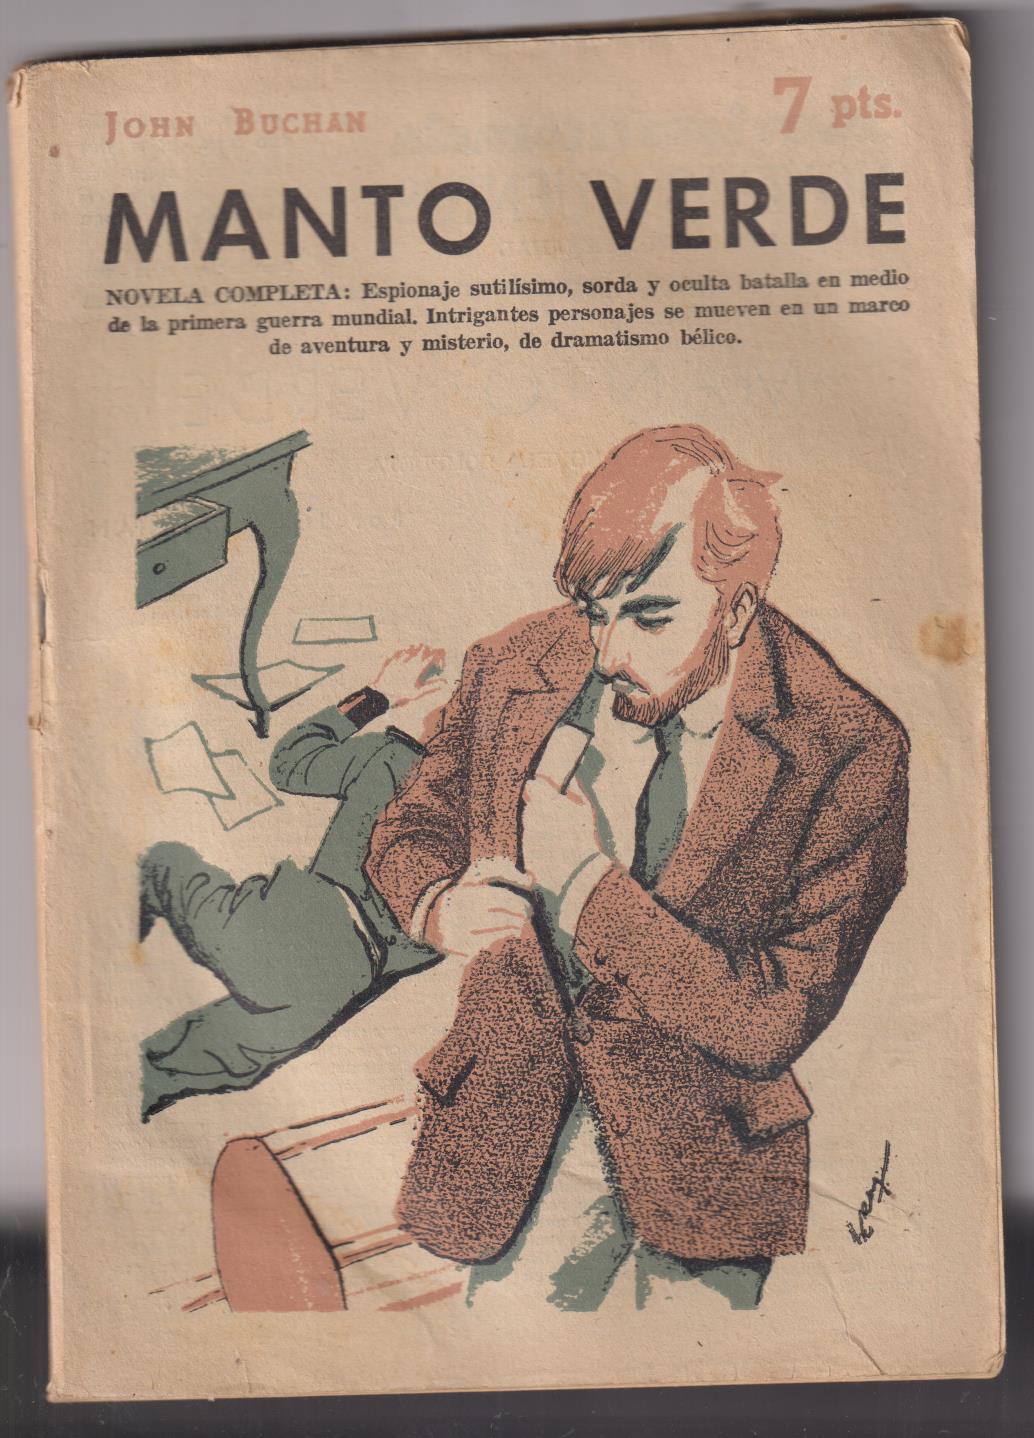 Revista Literaria Novelas y Cuentos nº 1404. manto verde por John Buchan. Año 1958